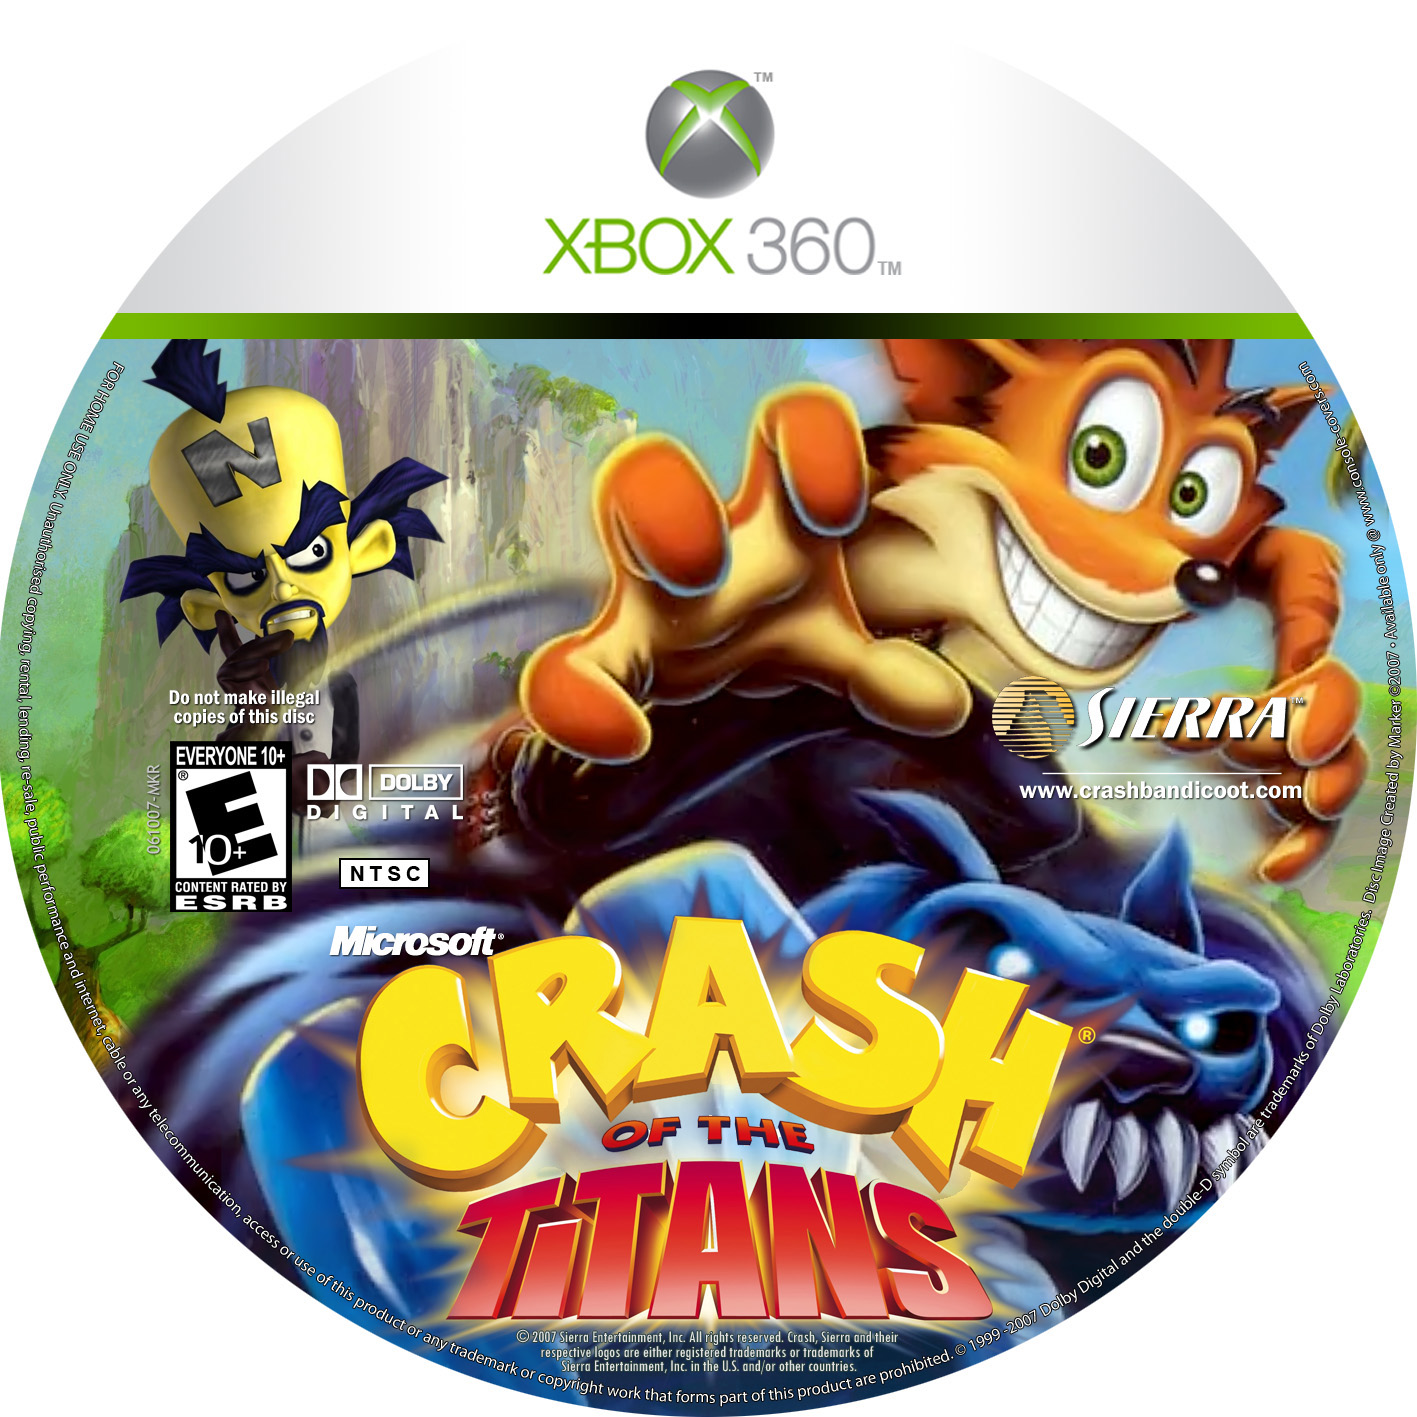 Краш игра иксы. Crash of the Titans Xbox 360 диск. Crash Bandicoot Xbox 360. Crash Bandicoot для Xbox 360 игры. Краш бандикут Икс бокс 360.